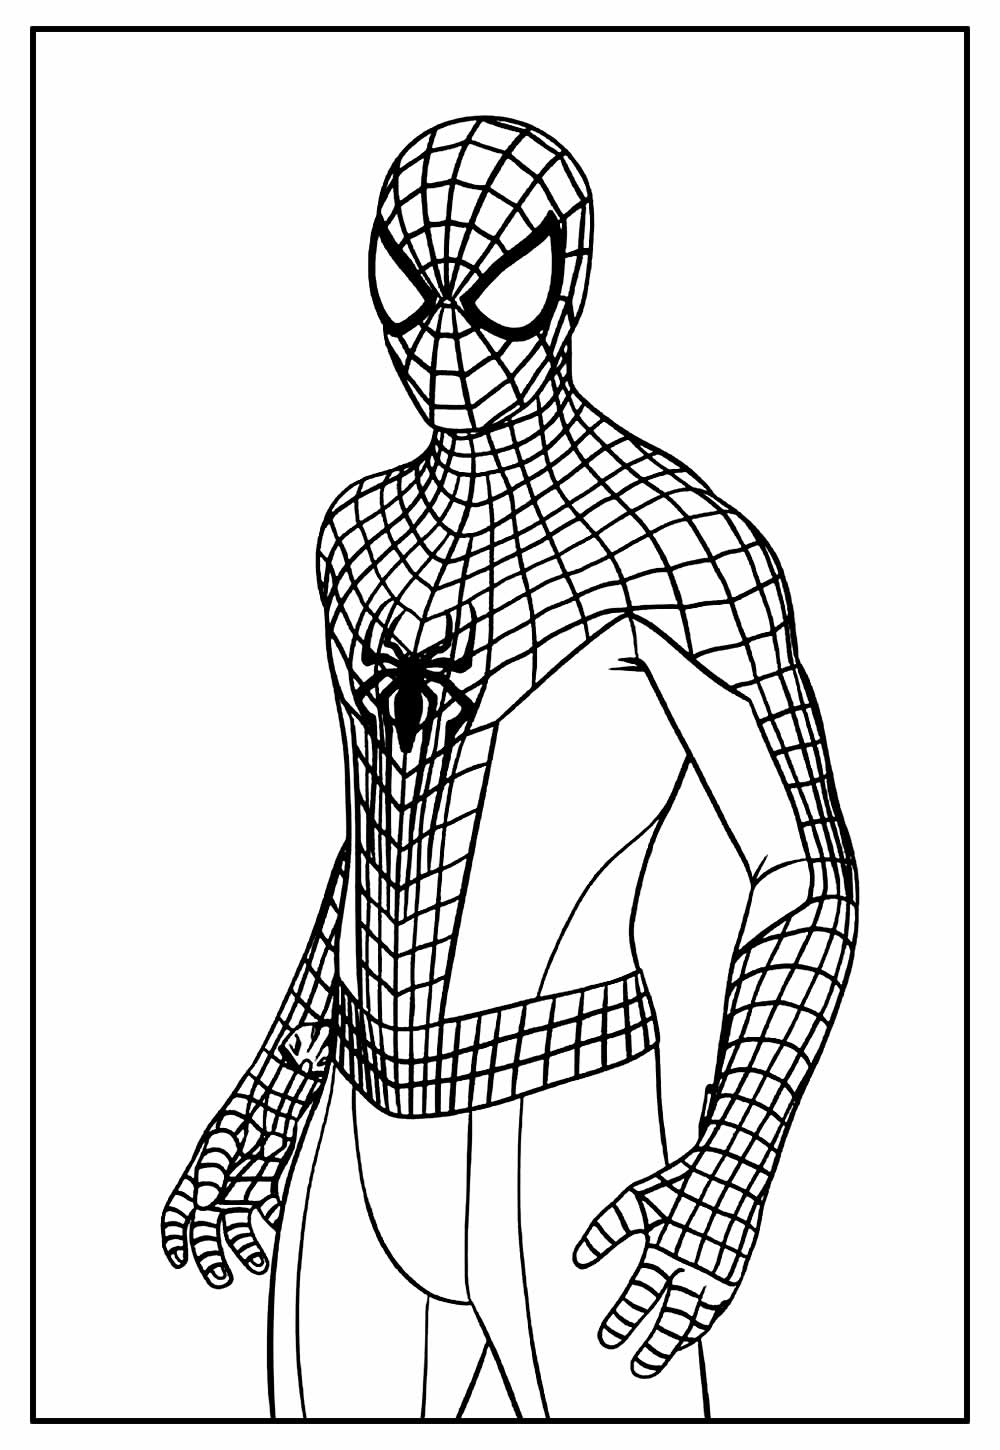 Desenho de Homem-Aranha para Colorir Online - Pinte Online